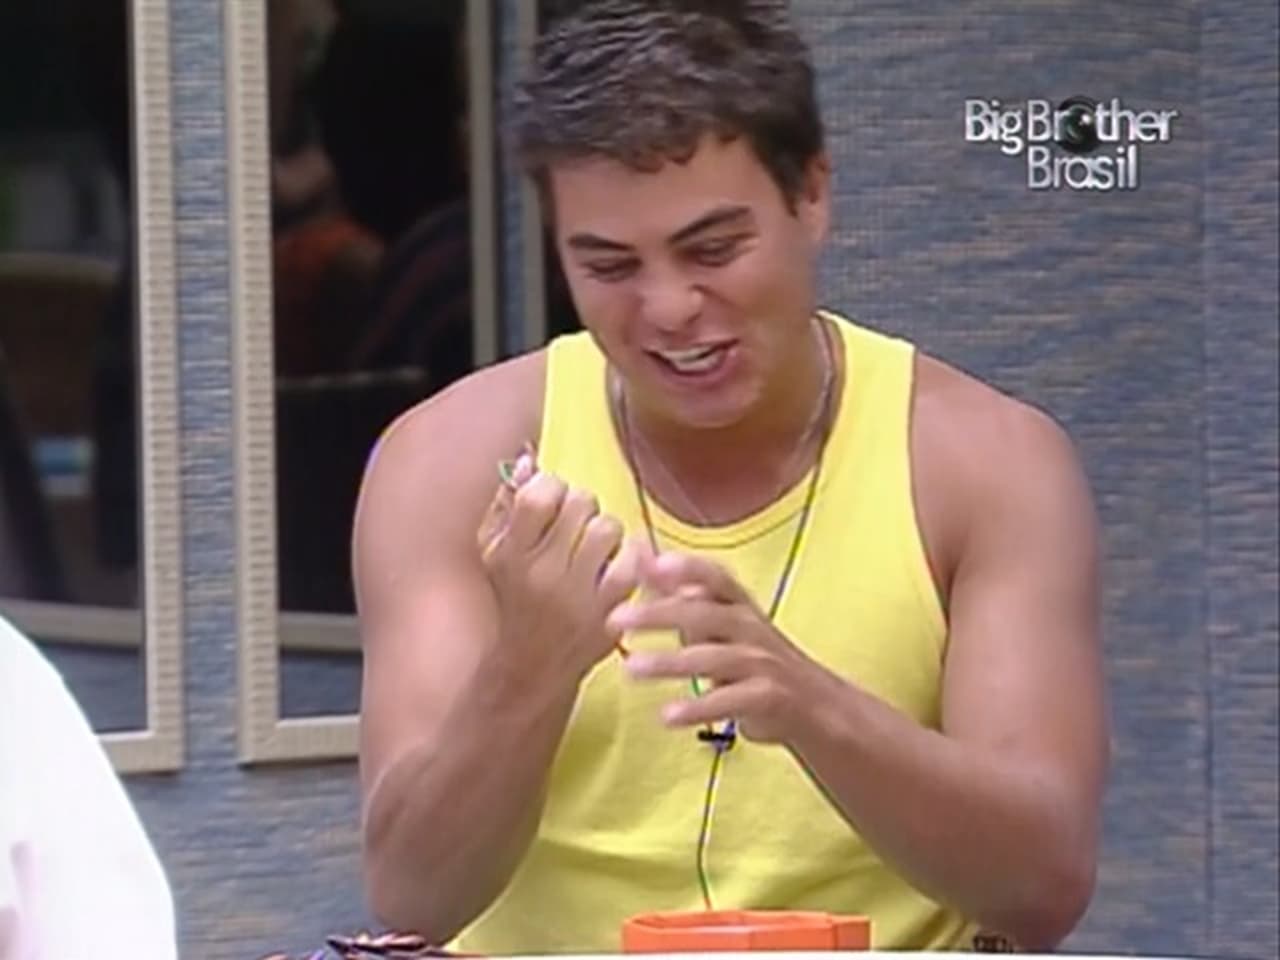 Big Brother Brasil - Season 3 Episode 39 : Episode 39